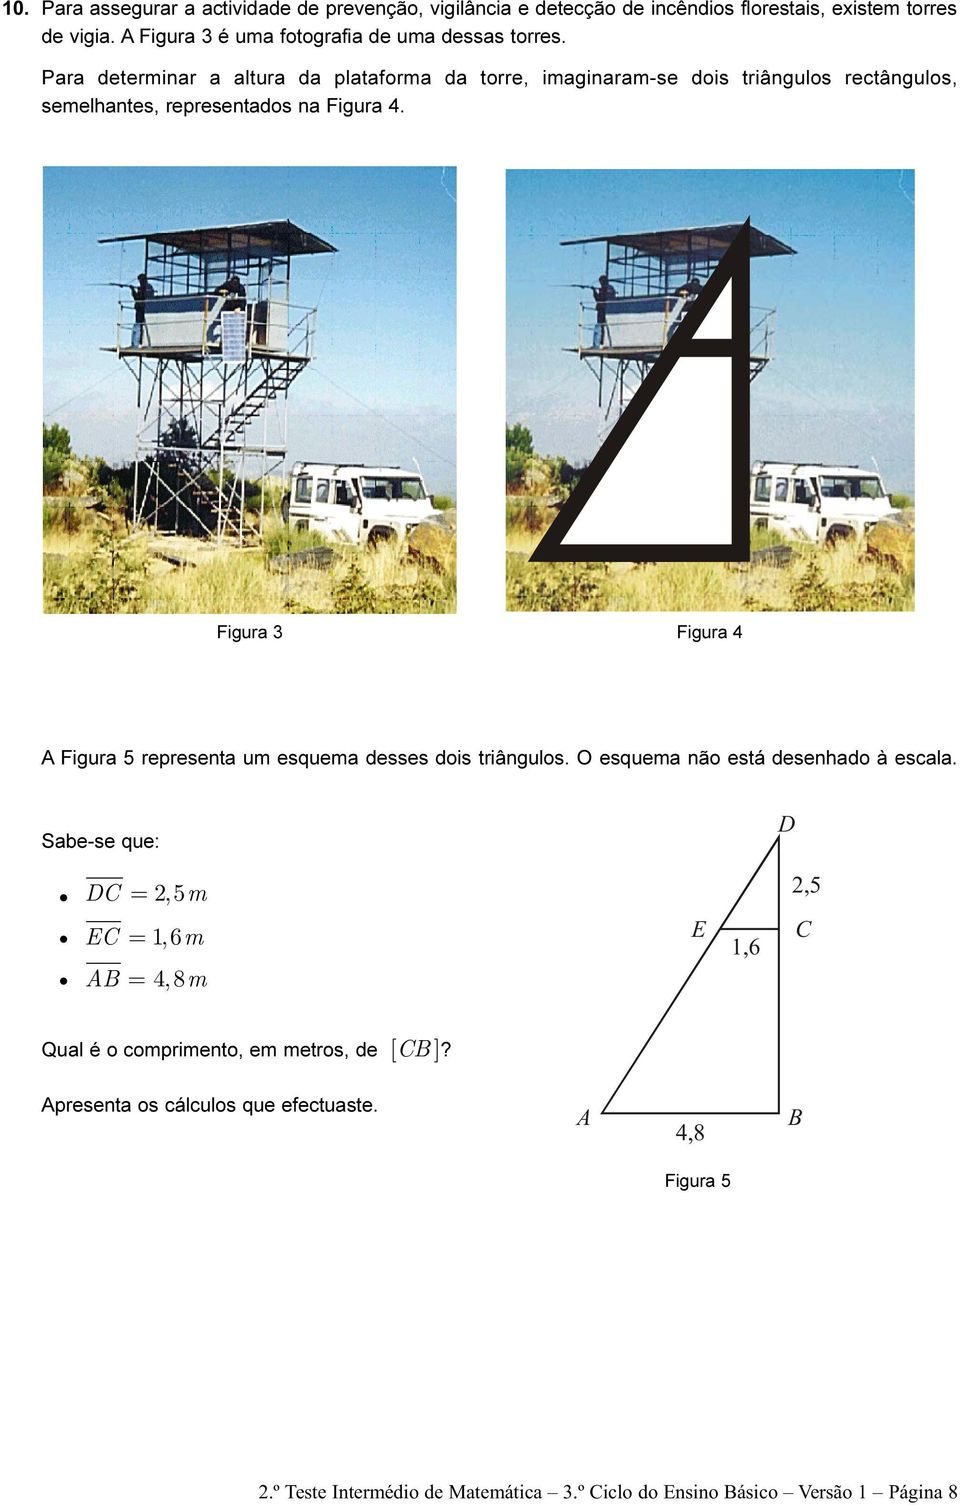 Para determinar a altura da plataforma da torre, imaginaram-se dois triângulos rectângulos, semelhantes, representados na Figura 4.